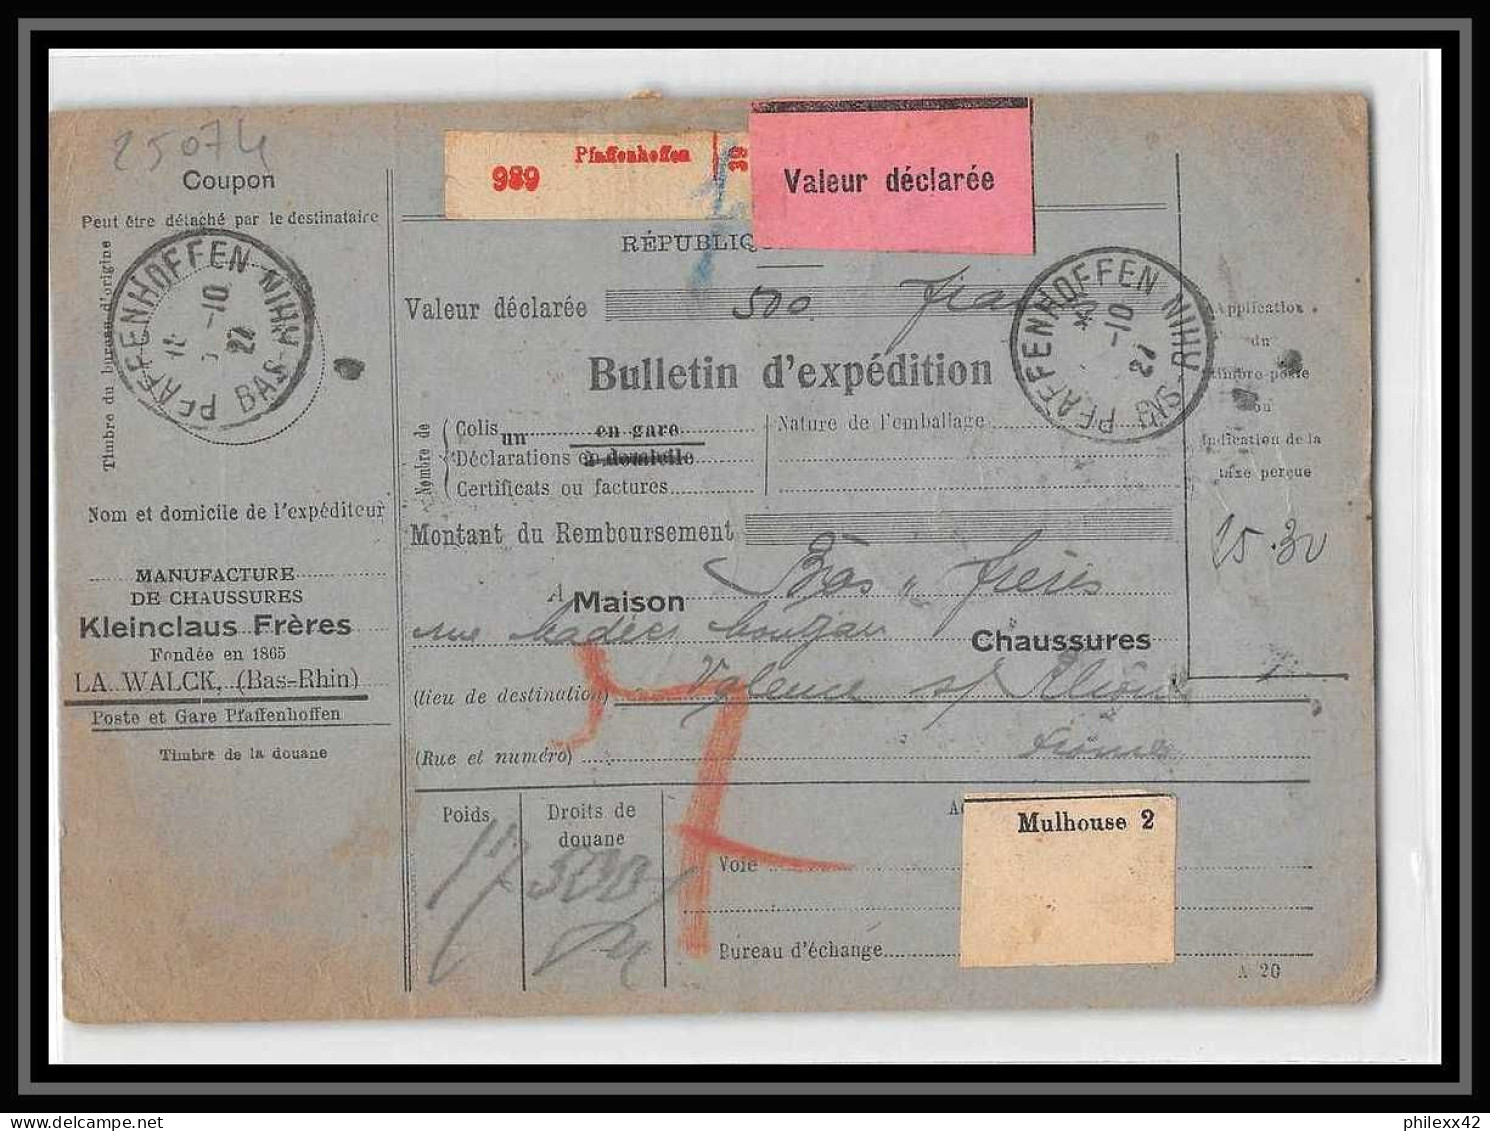 25074 Bulletin D'expédition France Colis Postaux Fiscal Haut Rhin 1927 Pfaffenhoff Merson 145+207 Alsace-Lorraine  - Brieven & Documenten